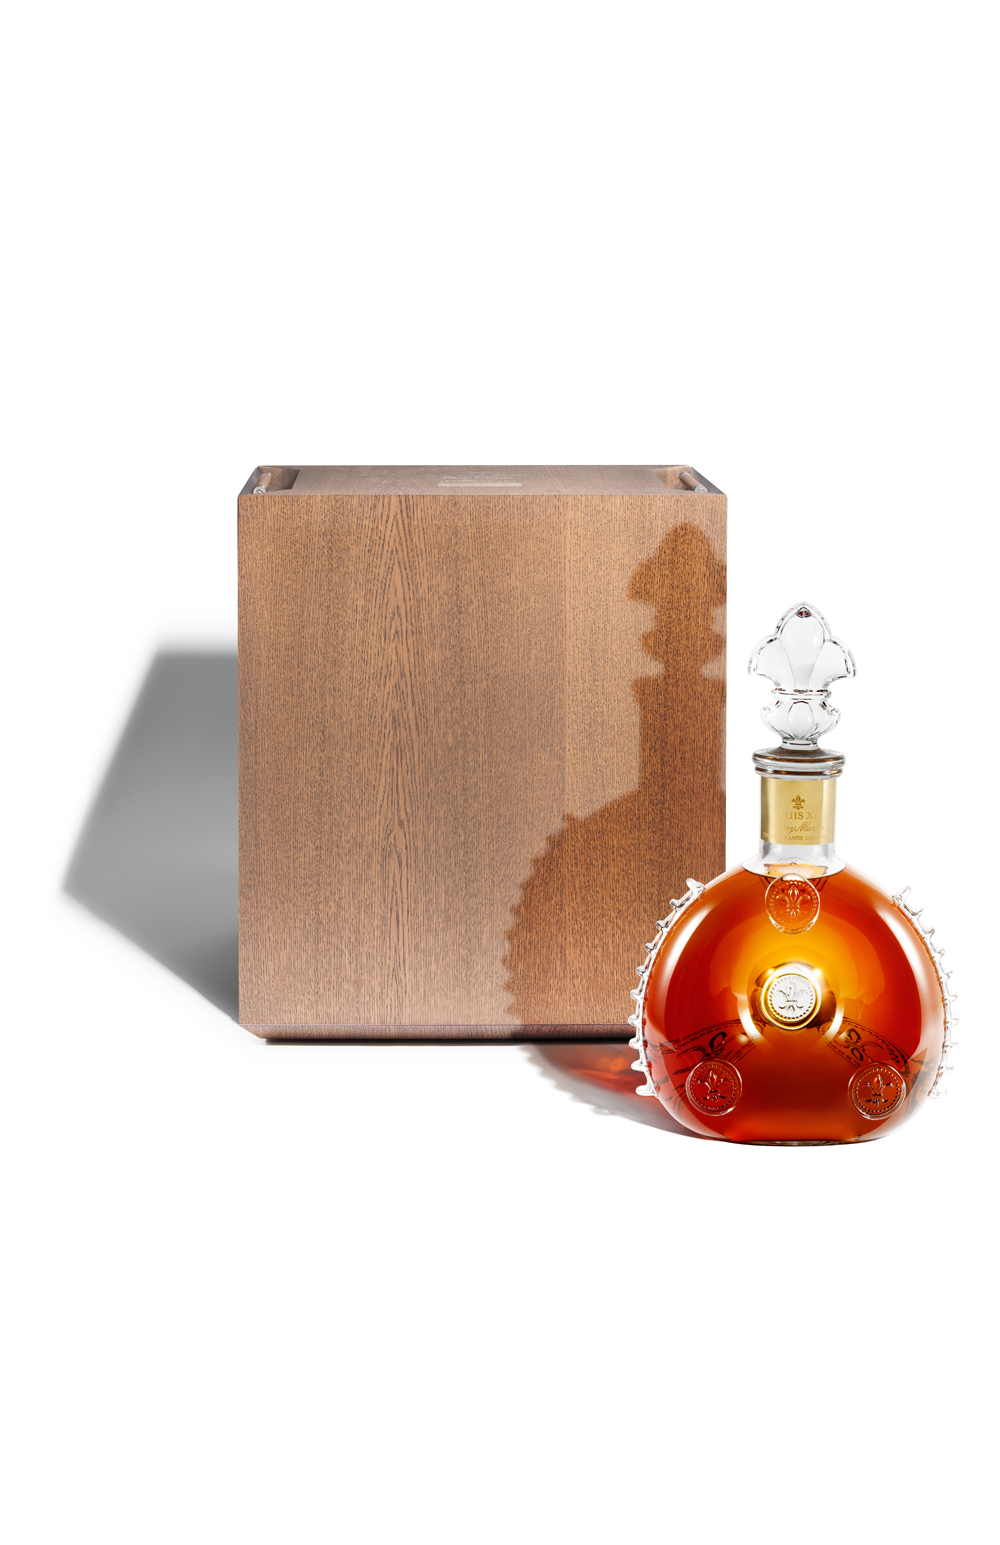 Buy Louis XIII 600cl Cognac France